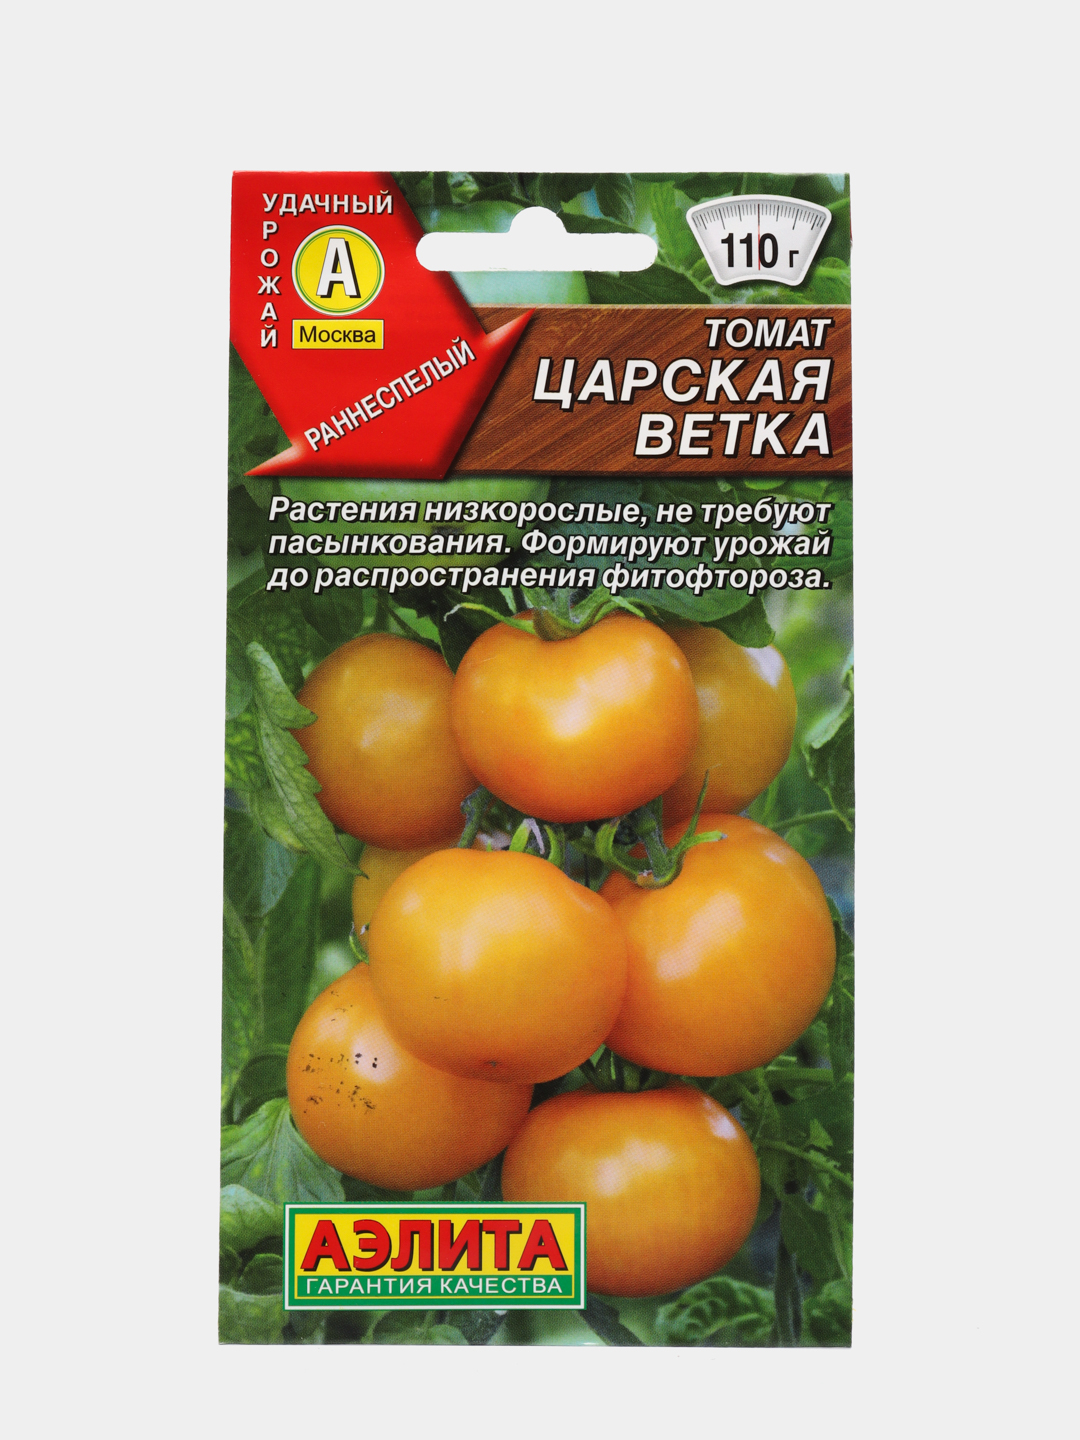 Сорт томатов Царская ветка